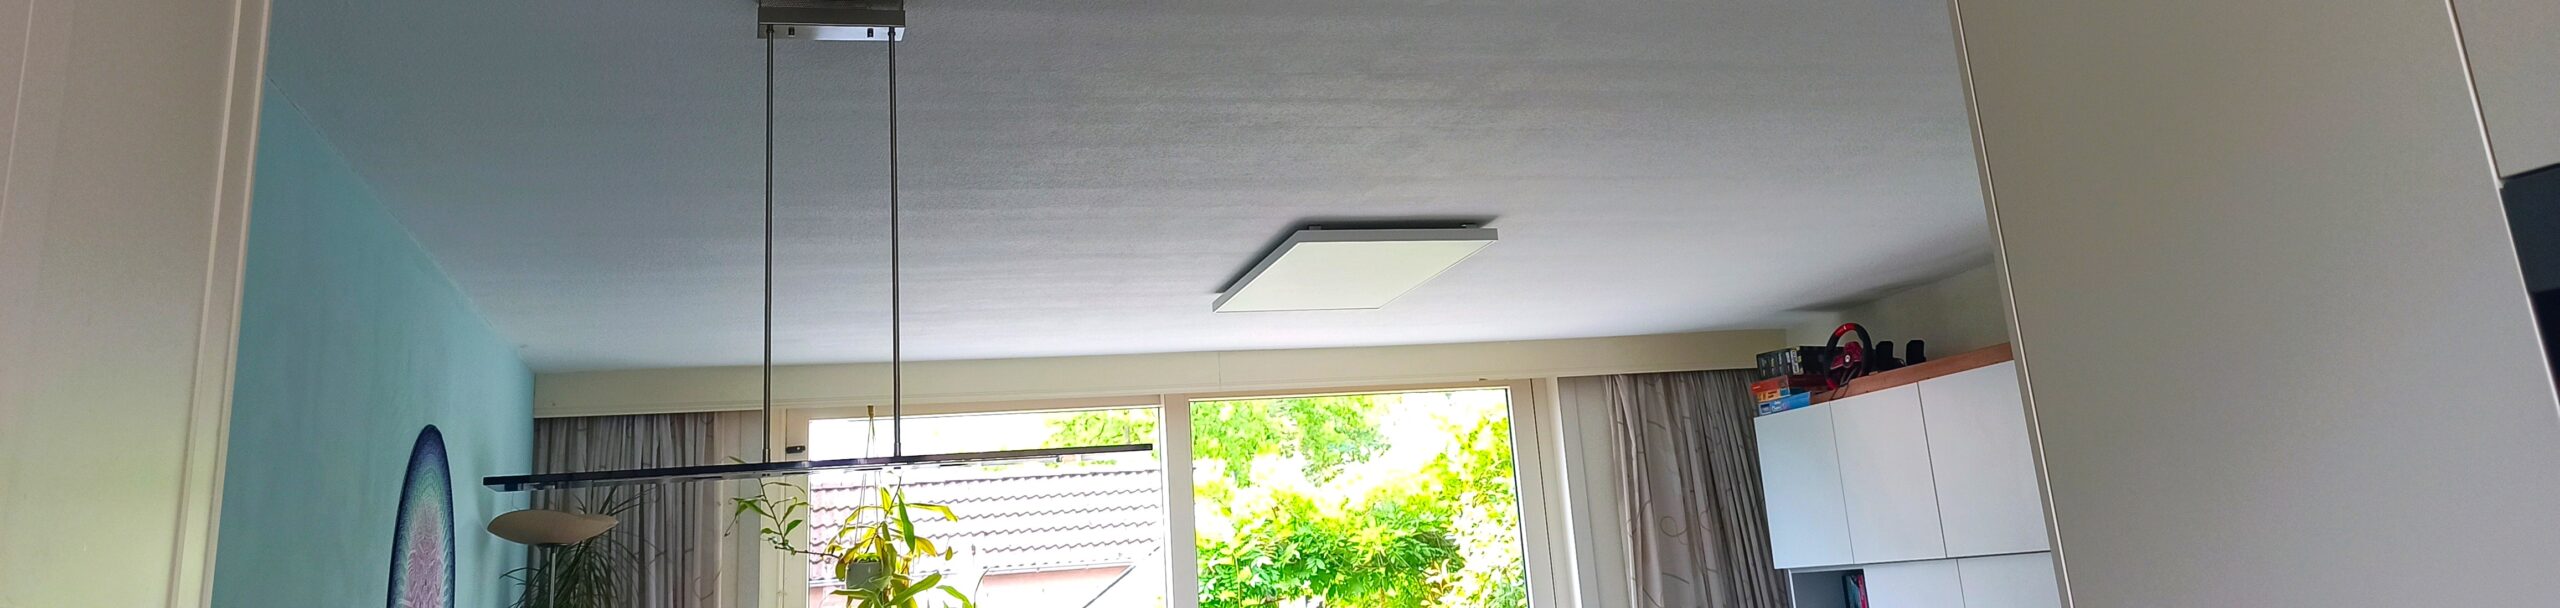 infraroodpaneel plafond woonkamer hoofdverwarming